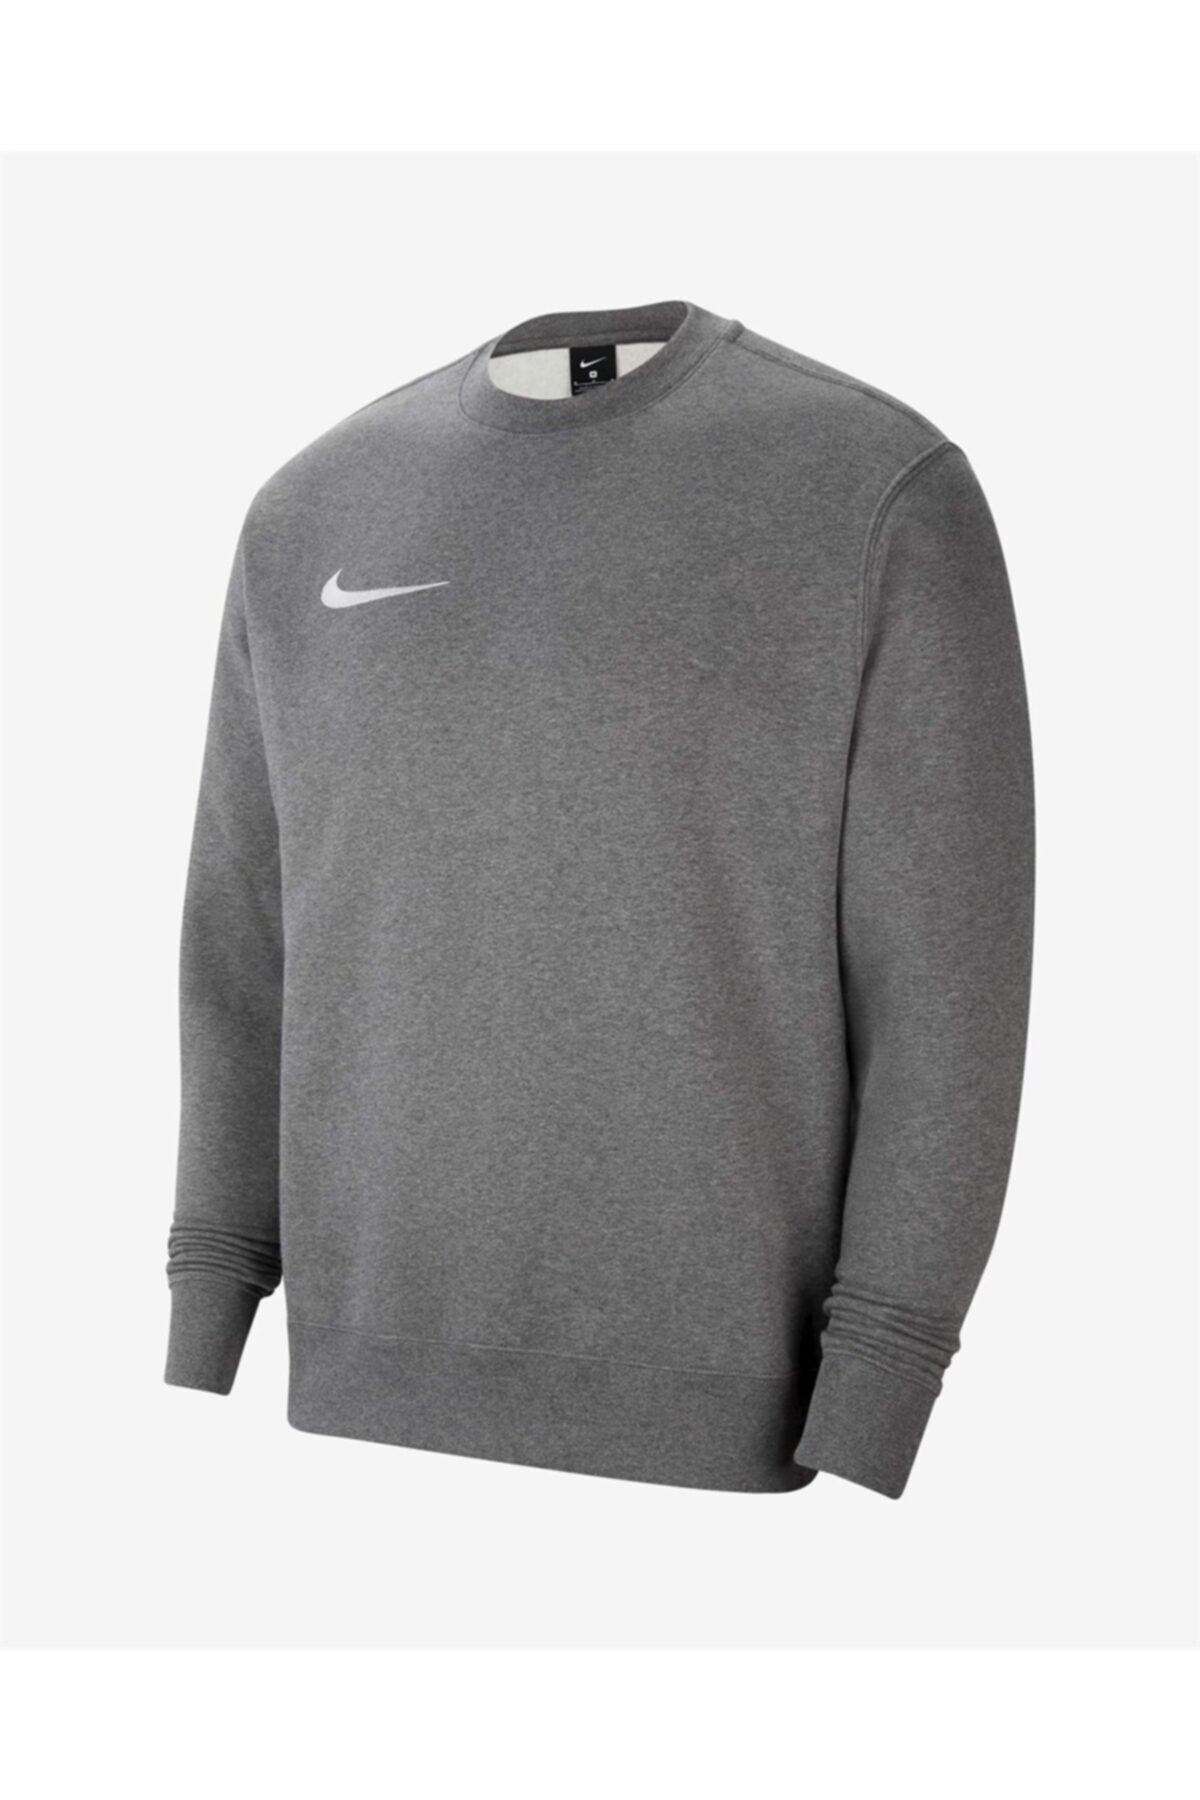 Nike Cw6902 071 M Nk Flc Park20 Crew Erkek Sweatshirt